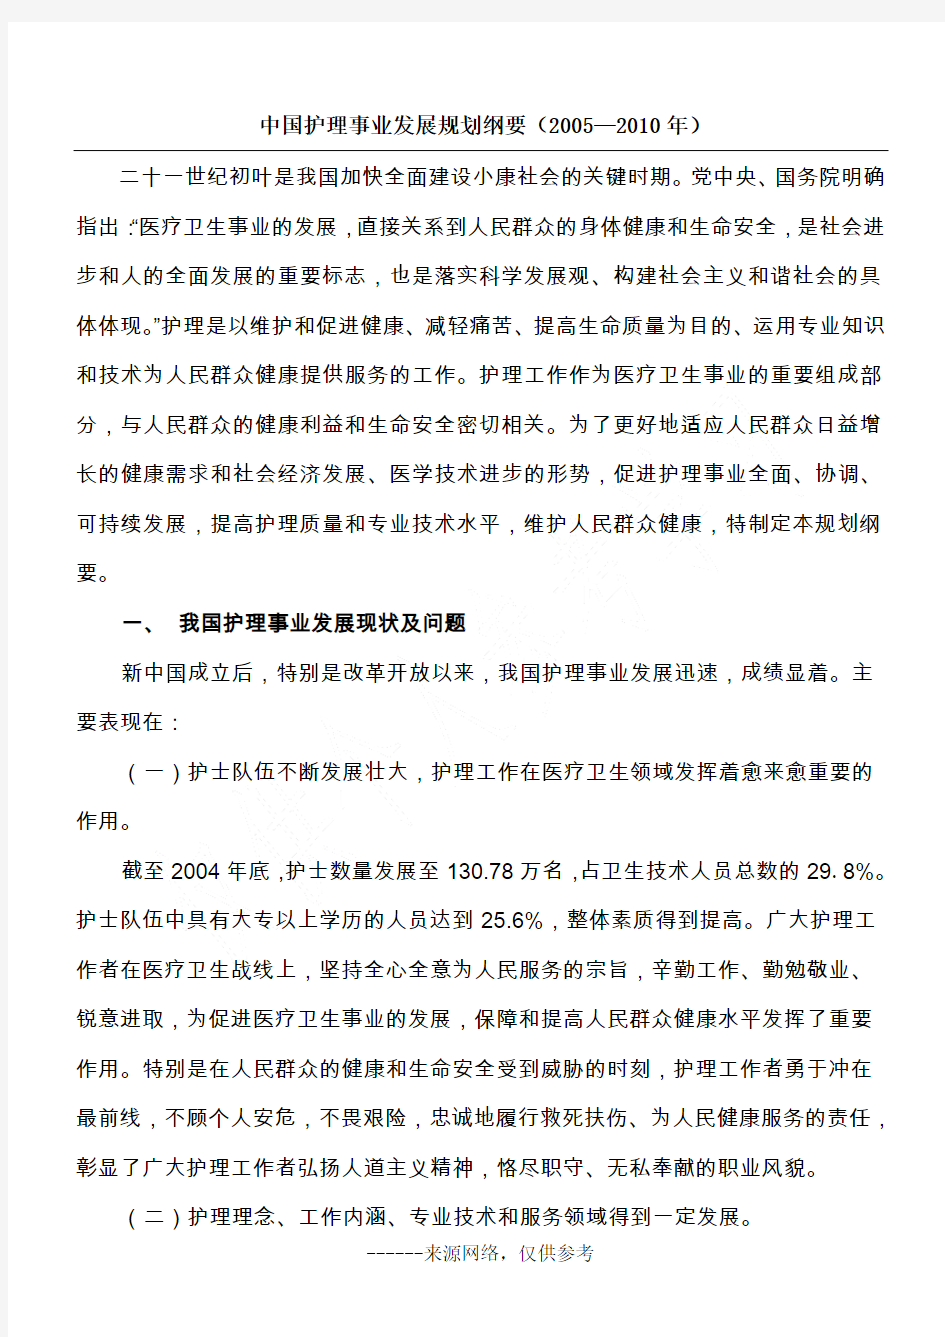 中国护理事业发展规划纲要(2005—2010年)